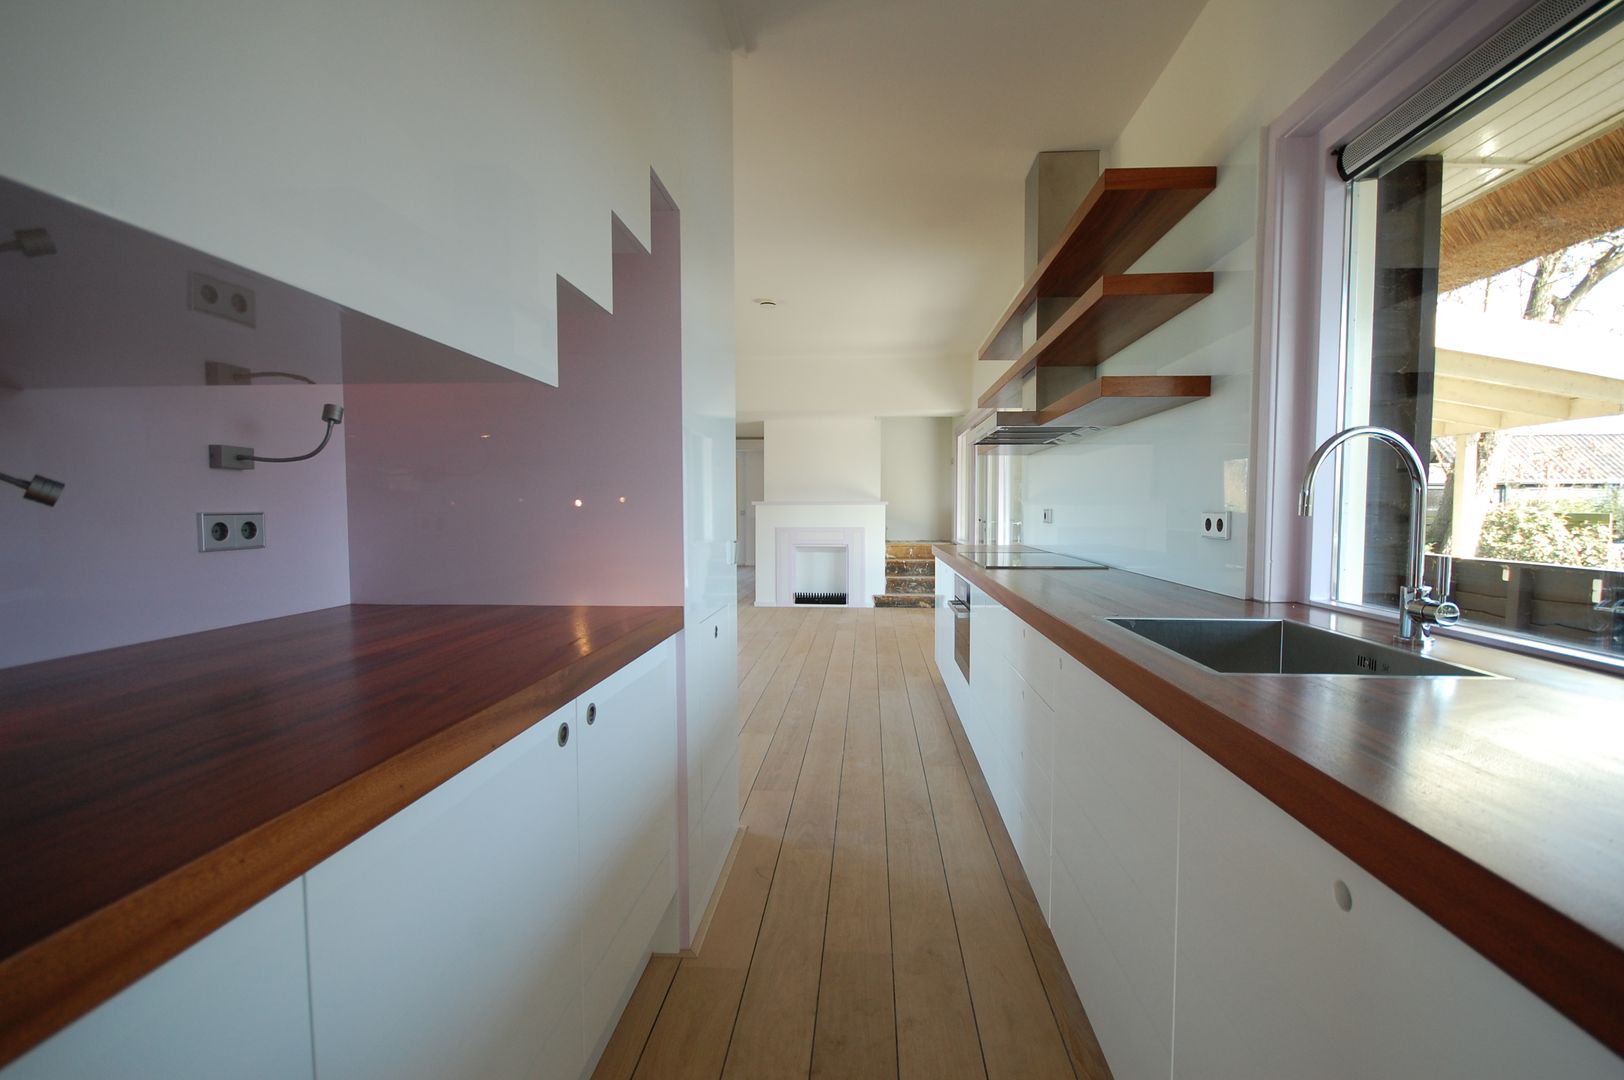 keuken met trap ARK+ Moderne keukens kasten,Eigendom,aanrecht:,Gebouw,Hout,Interieur ontwerp,Vloeren,houtbeits,Vloer,muur